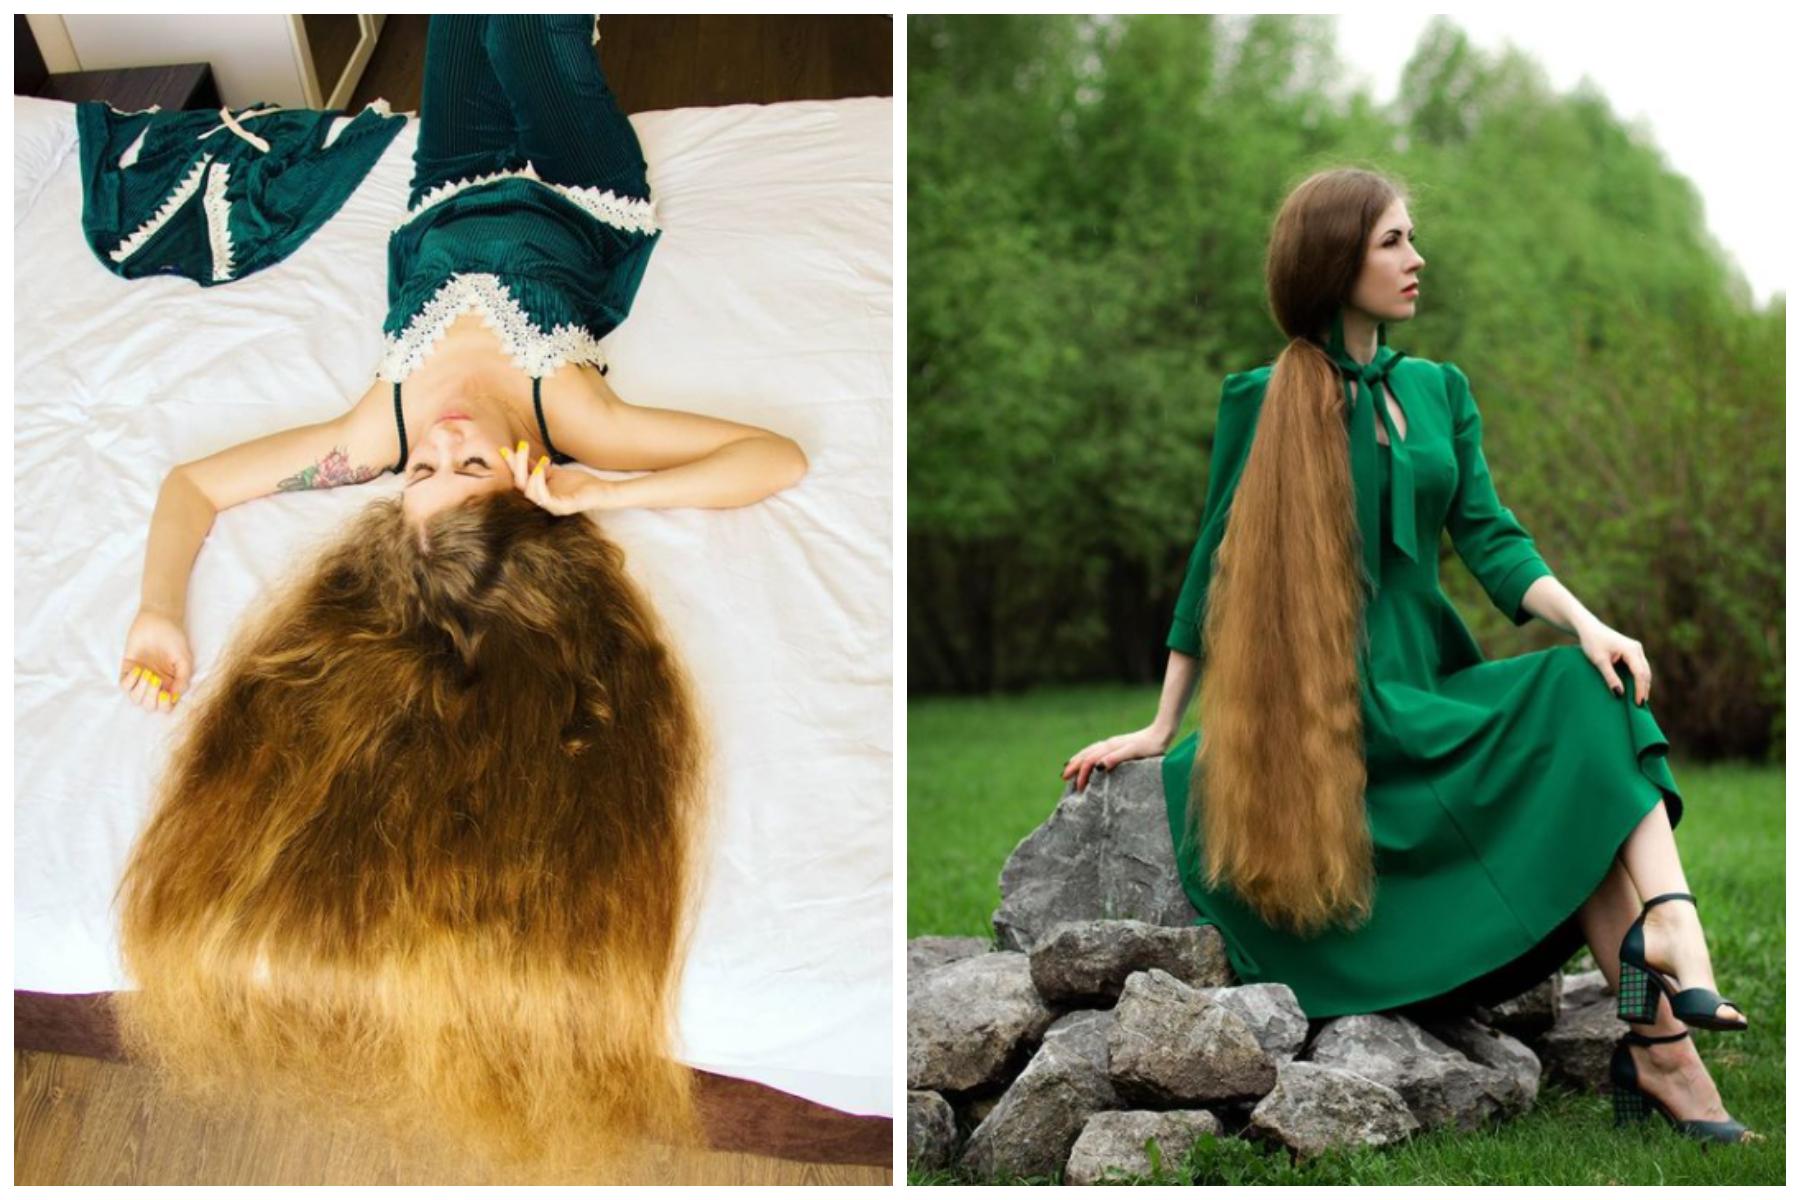 O femeie de 35 de ani din Rusia şi-a propus să devină o adevărată Rapunzel, cu plete lungi, bogate